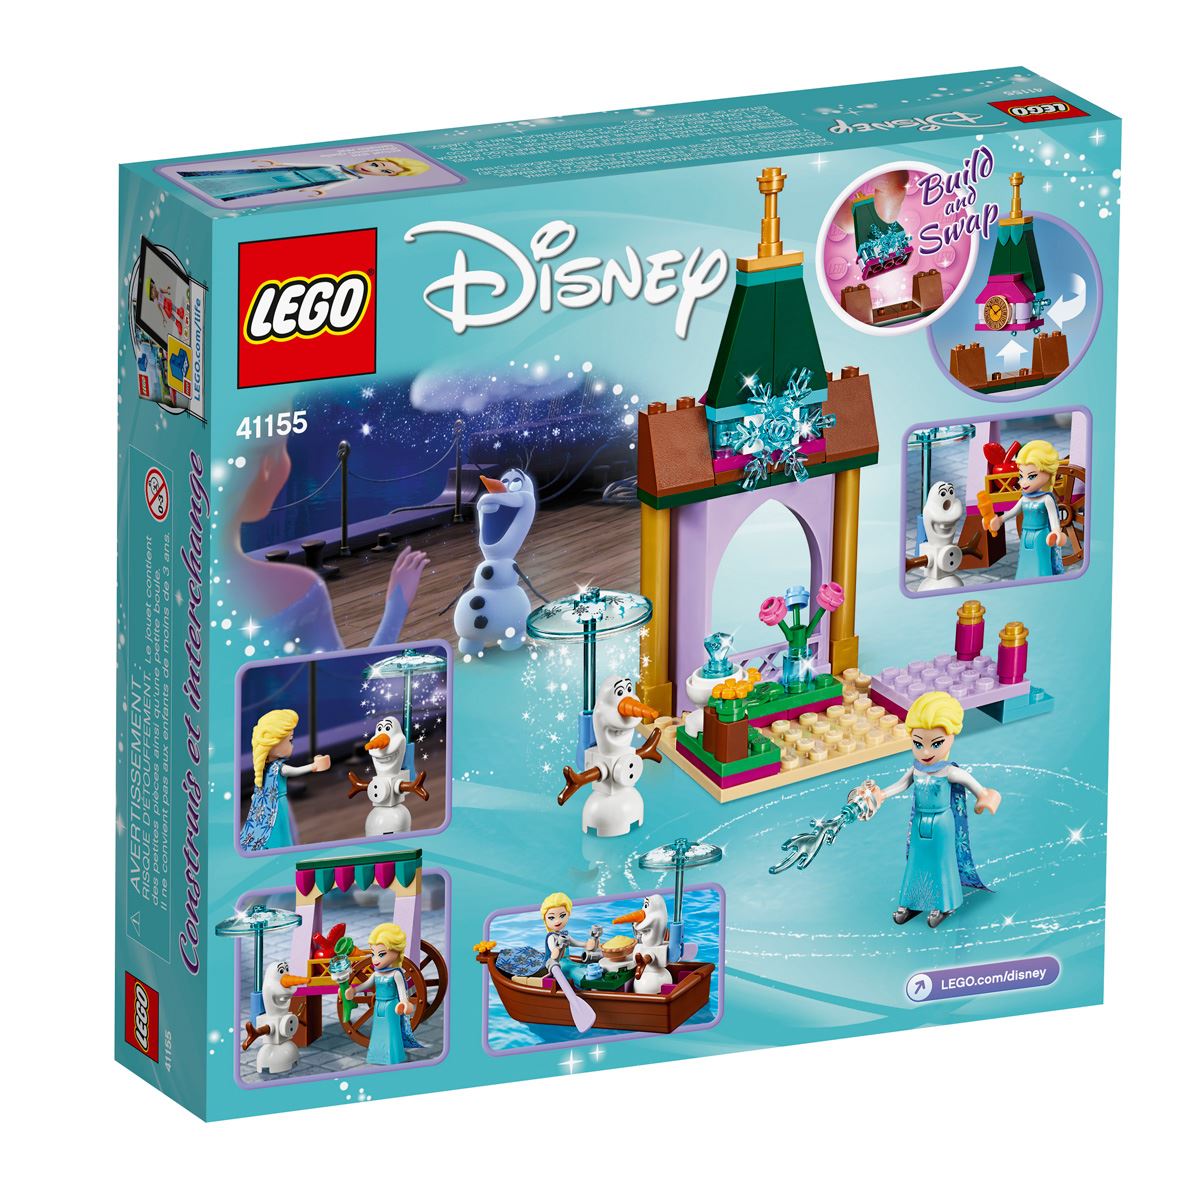 Lego Disney Frozen Aventura en El Mercado de Elsa